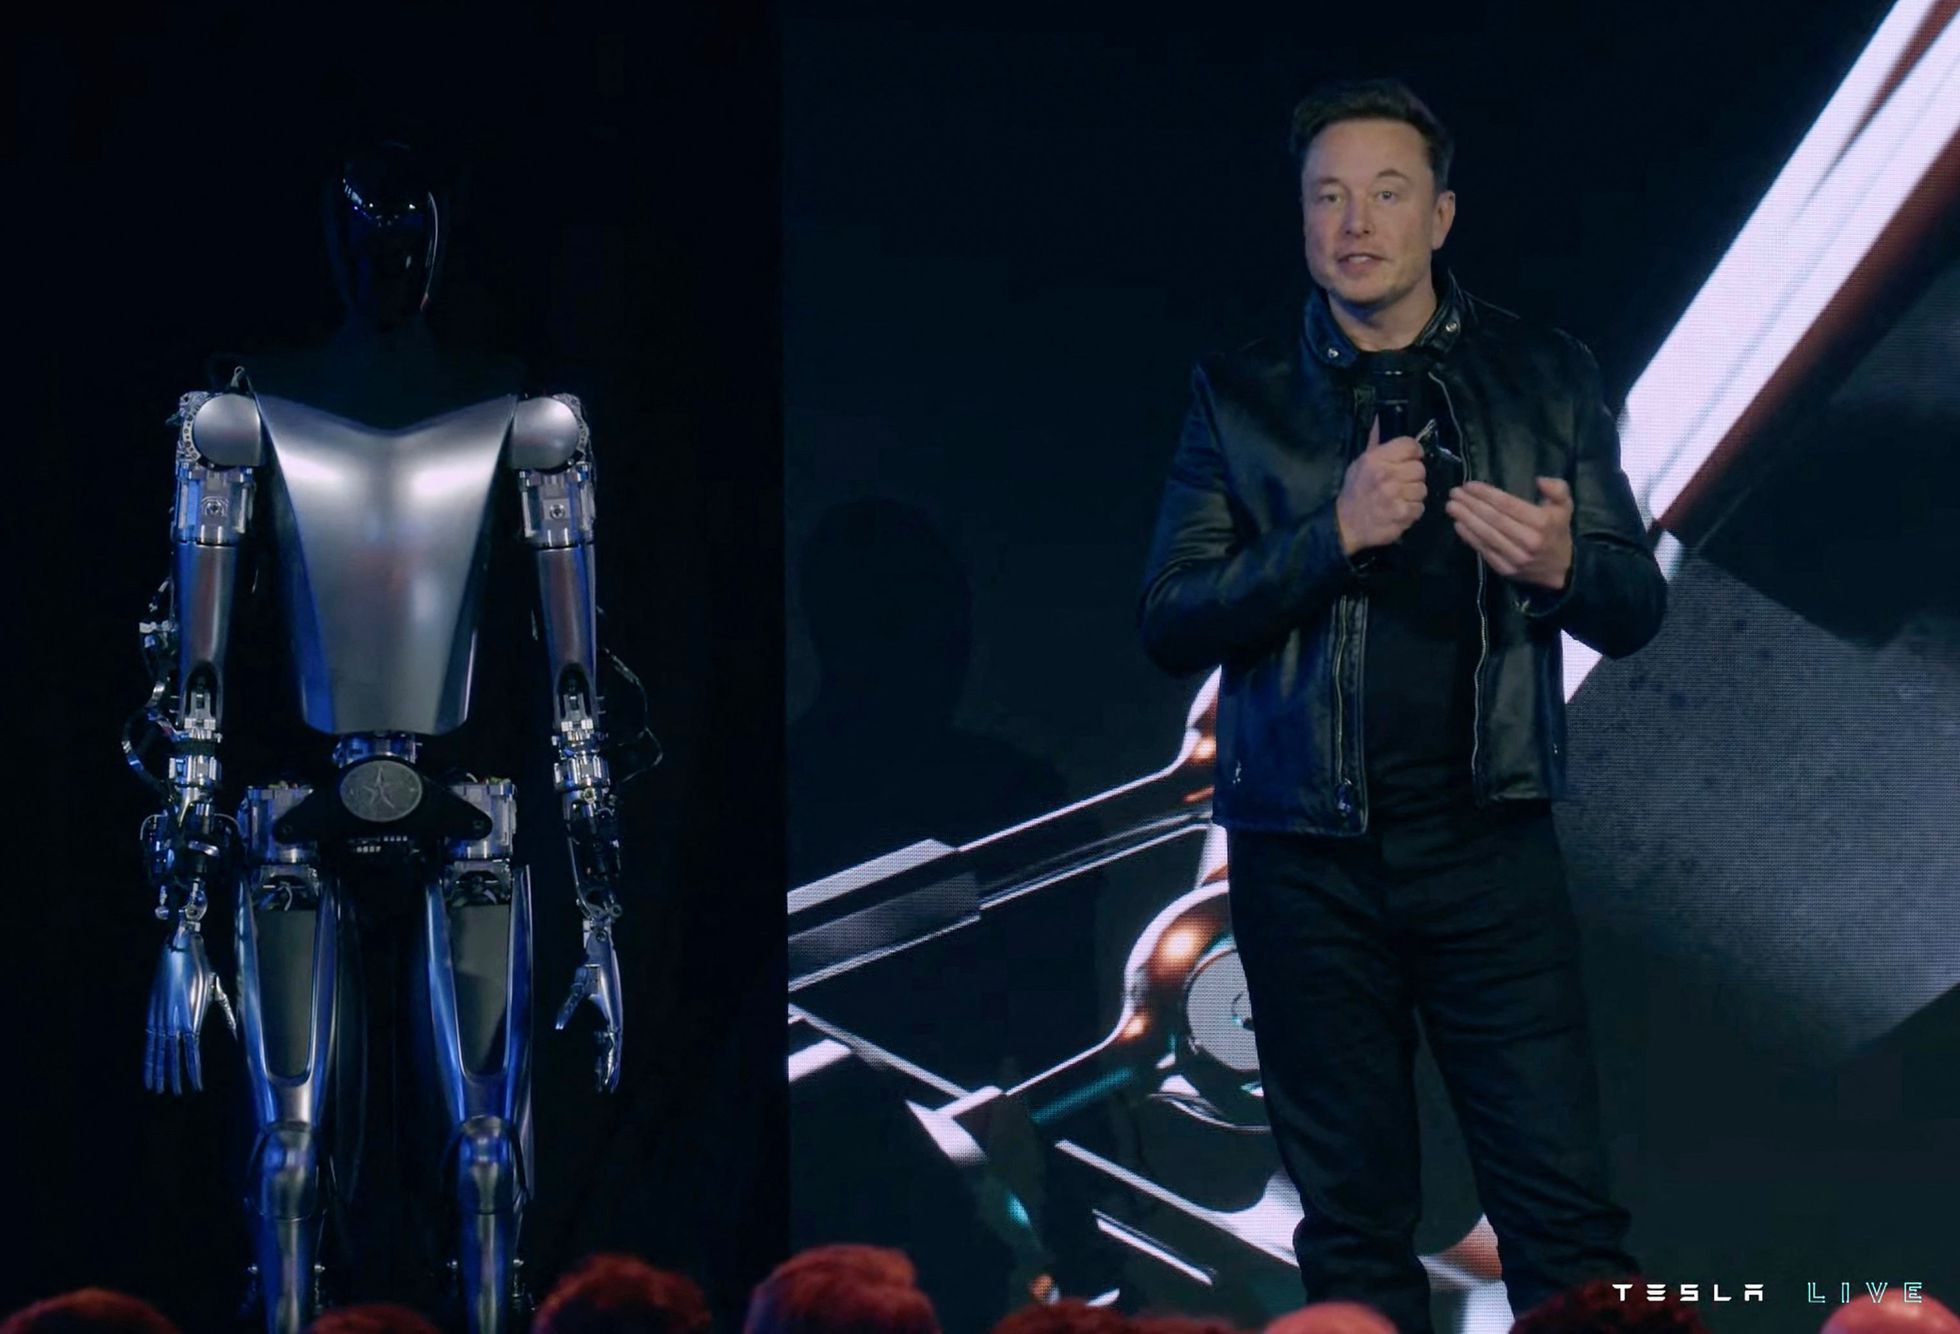 Robô Humanoide Da Tesla Que Elon Musk Quer Vender Por Menos De Us 20000 Veja Vídeo E Fotos 0608